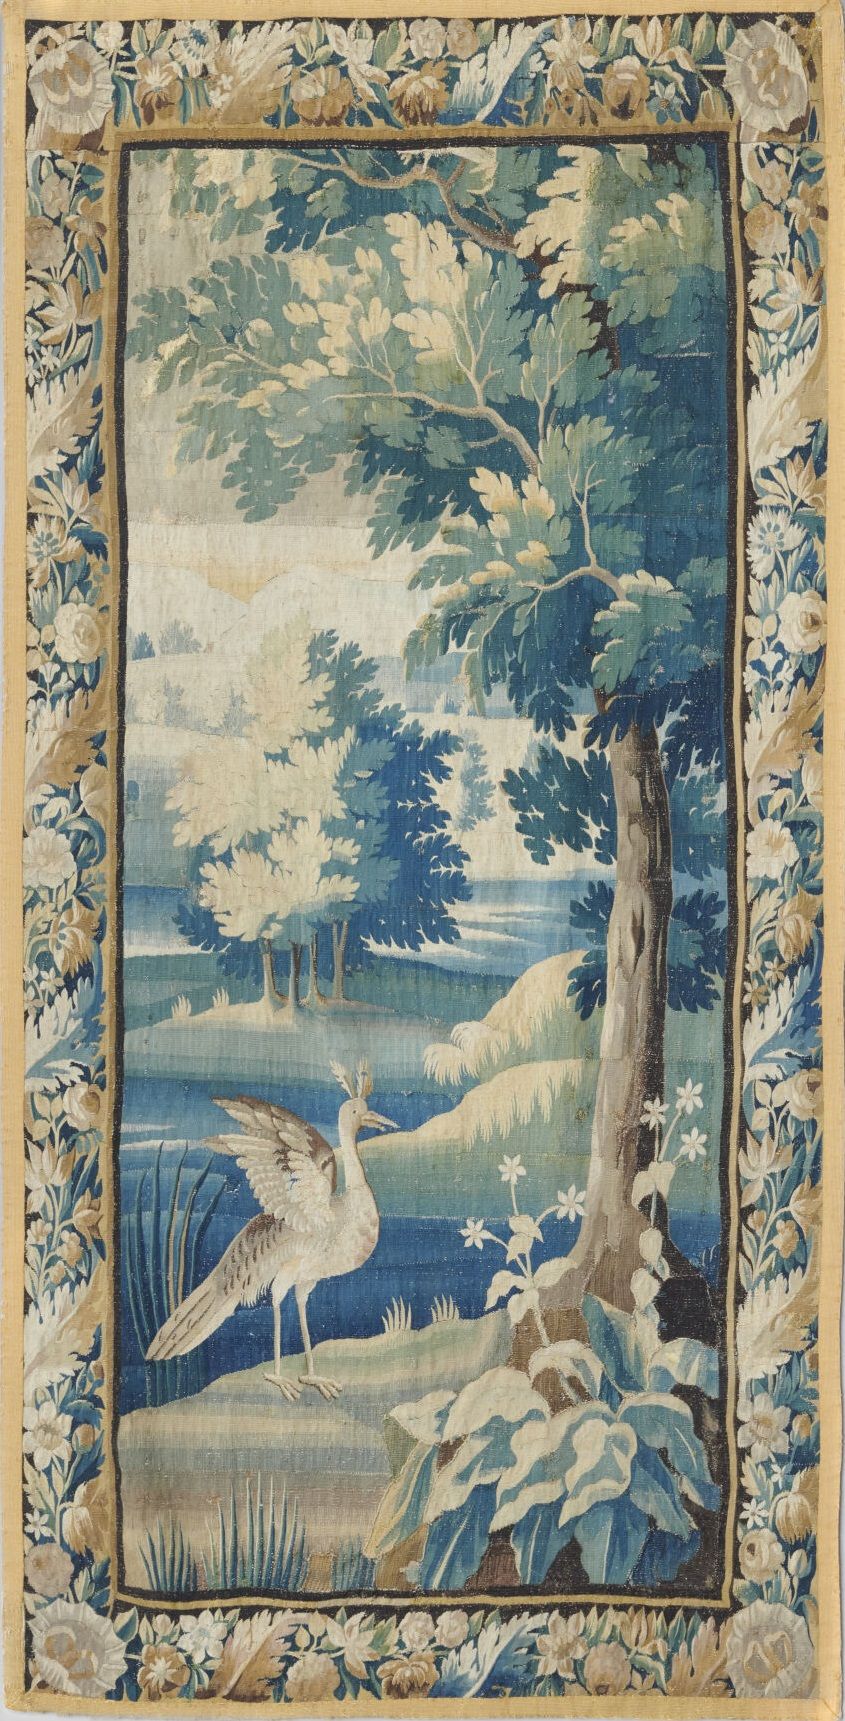 Null 两块奥布松挂毯的碎片，装饰着灌木丛中的涉水者，边框装饰着树叶和花朵
18世纪
H.242厘米 - 宽132厘米 PFD 
重要的修复工作，有衬里